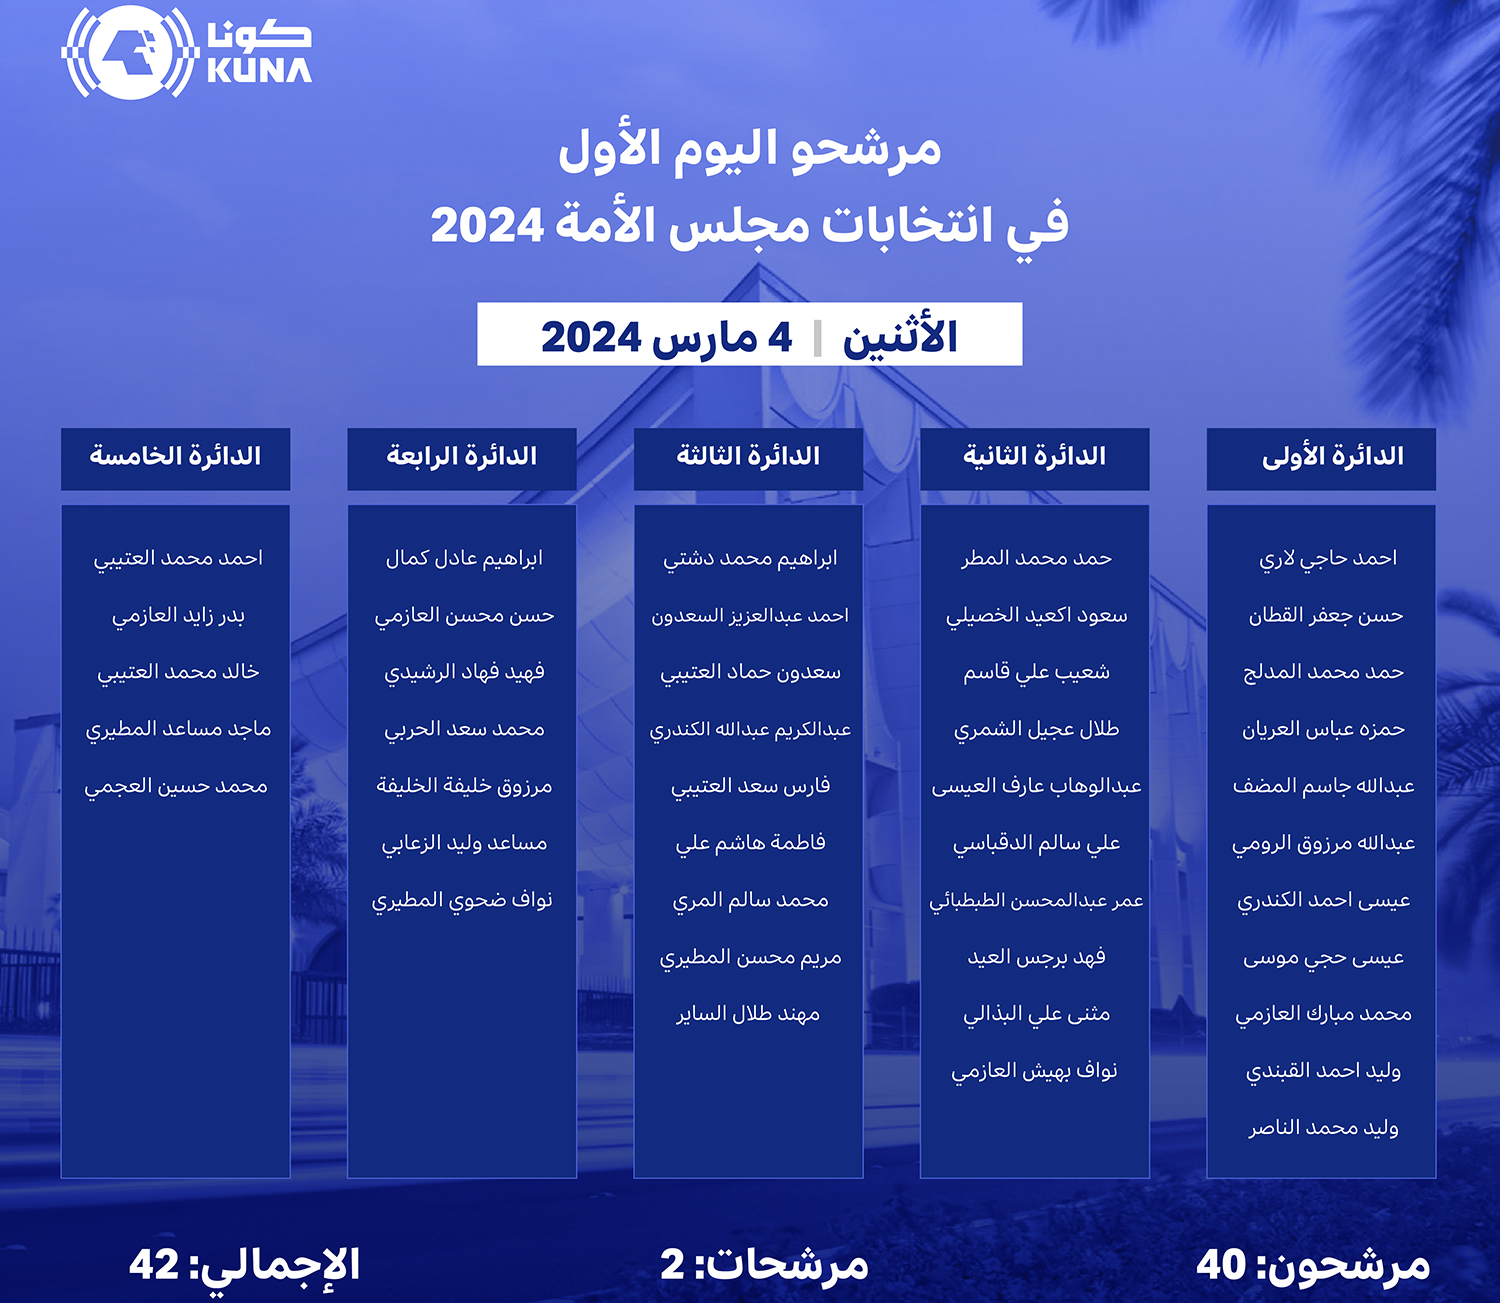 42 مرشحا ومرشحة في اليوم الأول من فتح باب الترشح لانتخابات مجلس الأمة 2024                                                                                                                                                                                